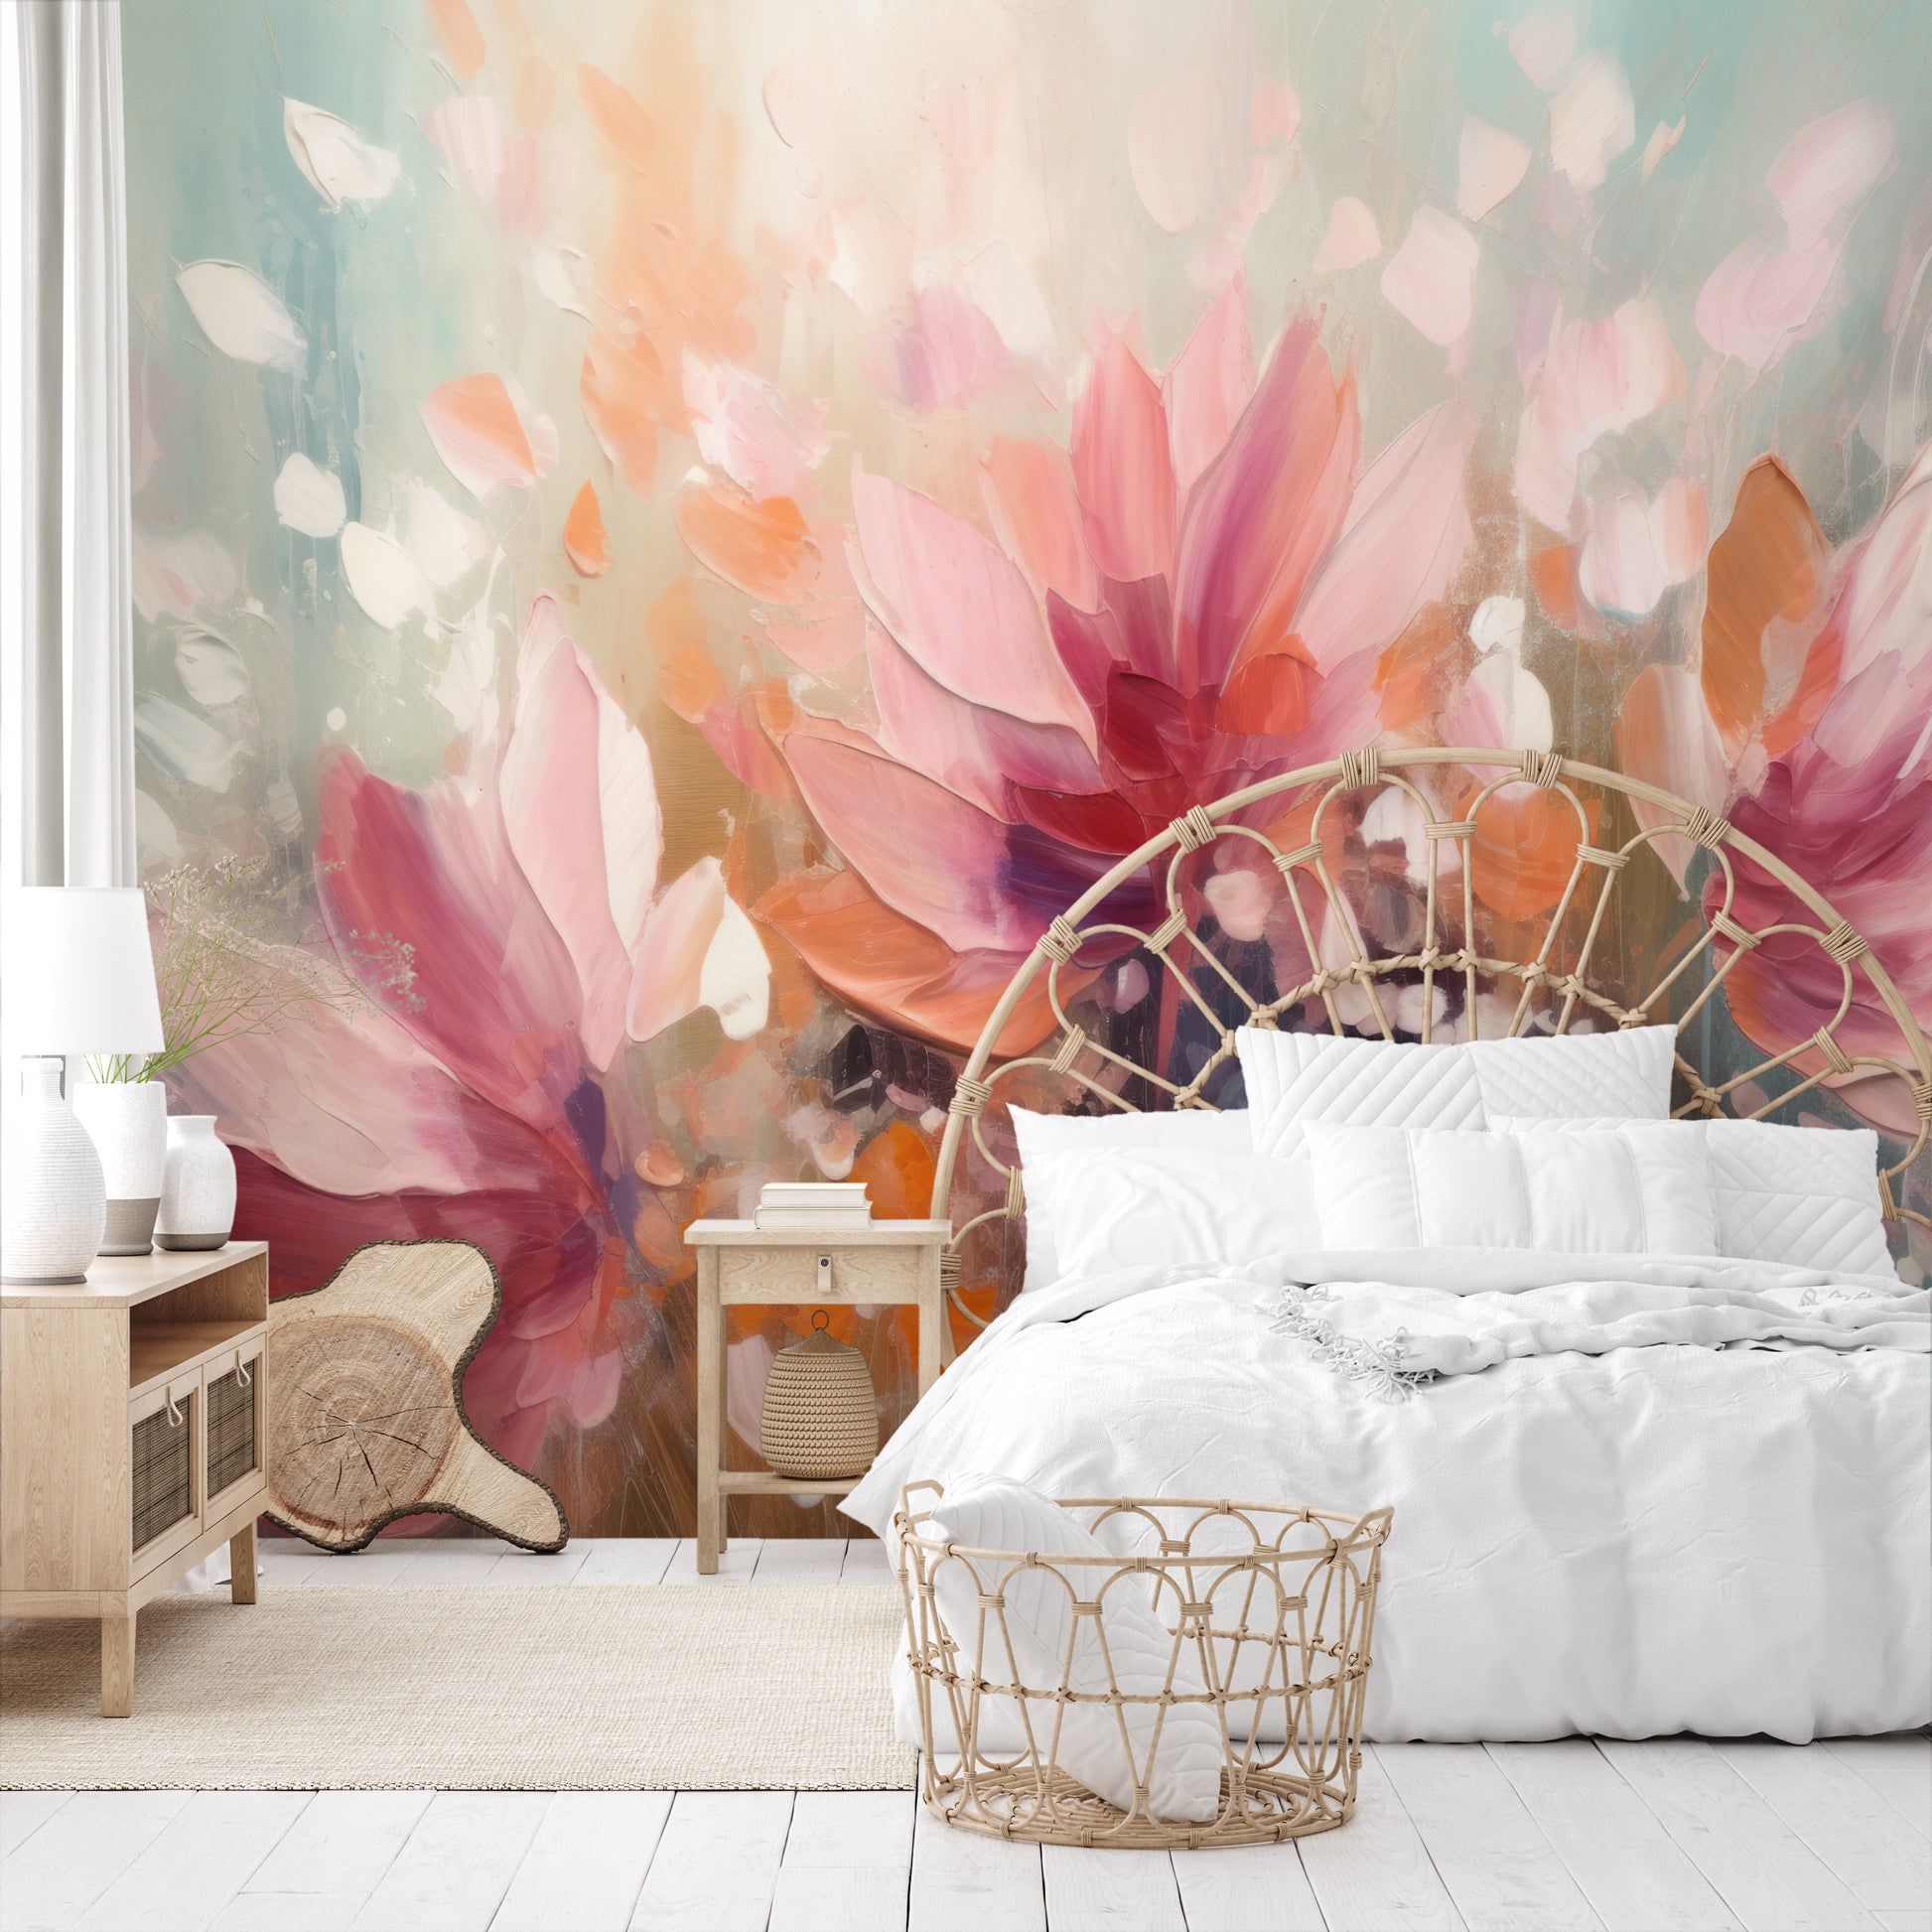 Fototapeta o nazwie Dreamy Floral Abstraction użyta w aranzacji wnętrza.